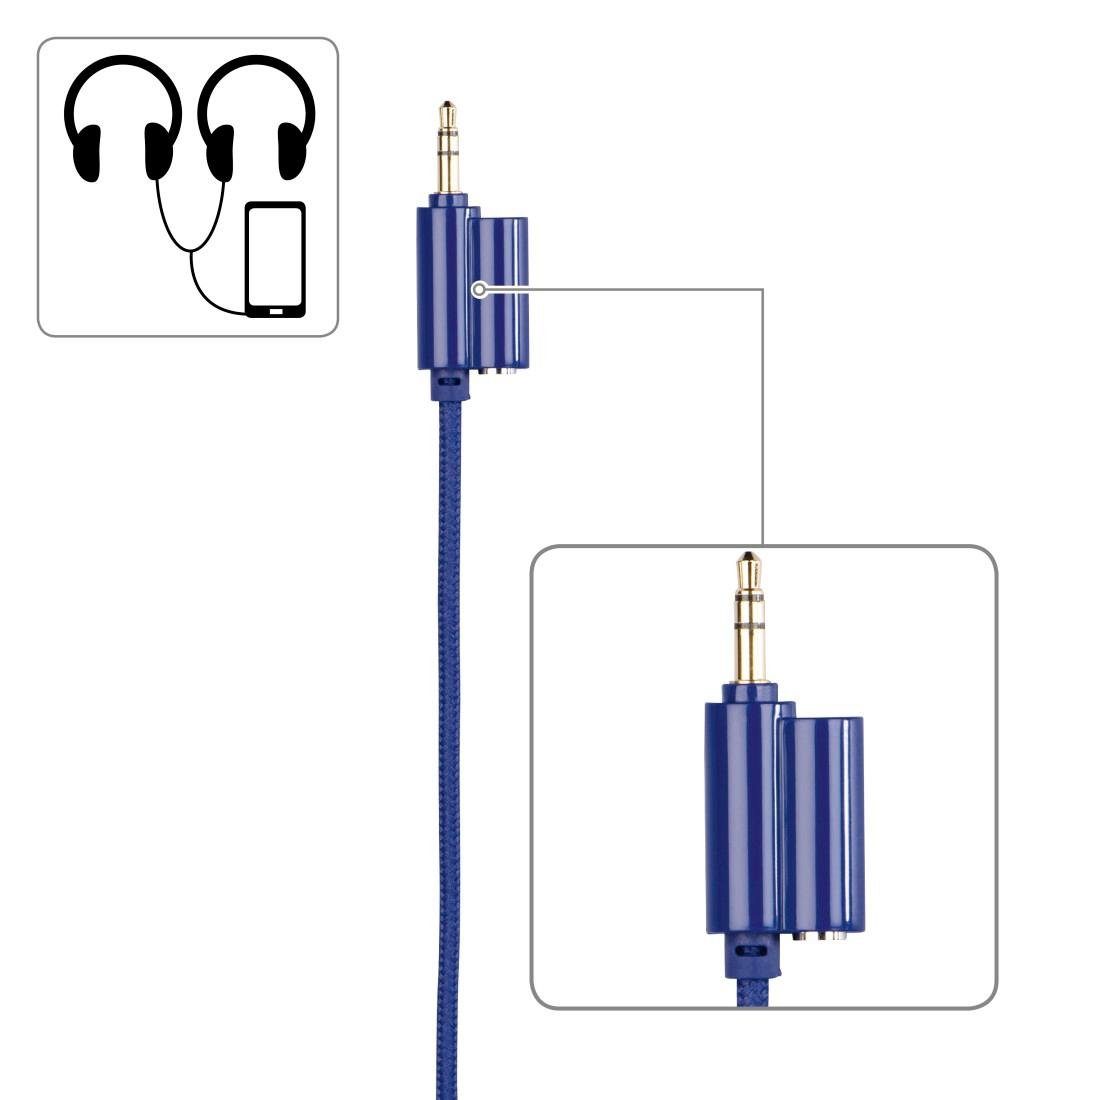 Thomson Kinderkopfhörer mit weiterer zusammenfaltbar, leicht auf möglich) Lautstärkebegrenzung 85dB On-Ear, Kopfhöreranschluss Kabel blau On-Ear-Kopfhörer (größenverstellbar